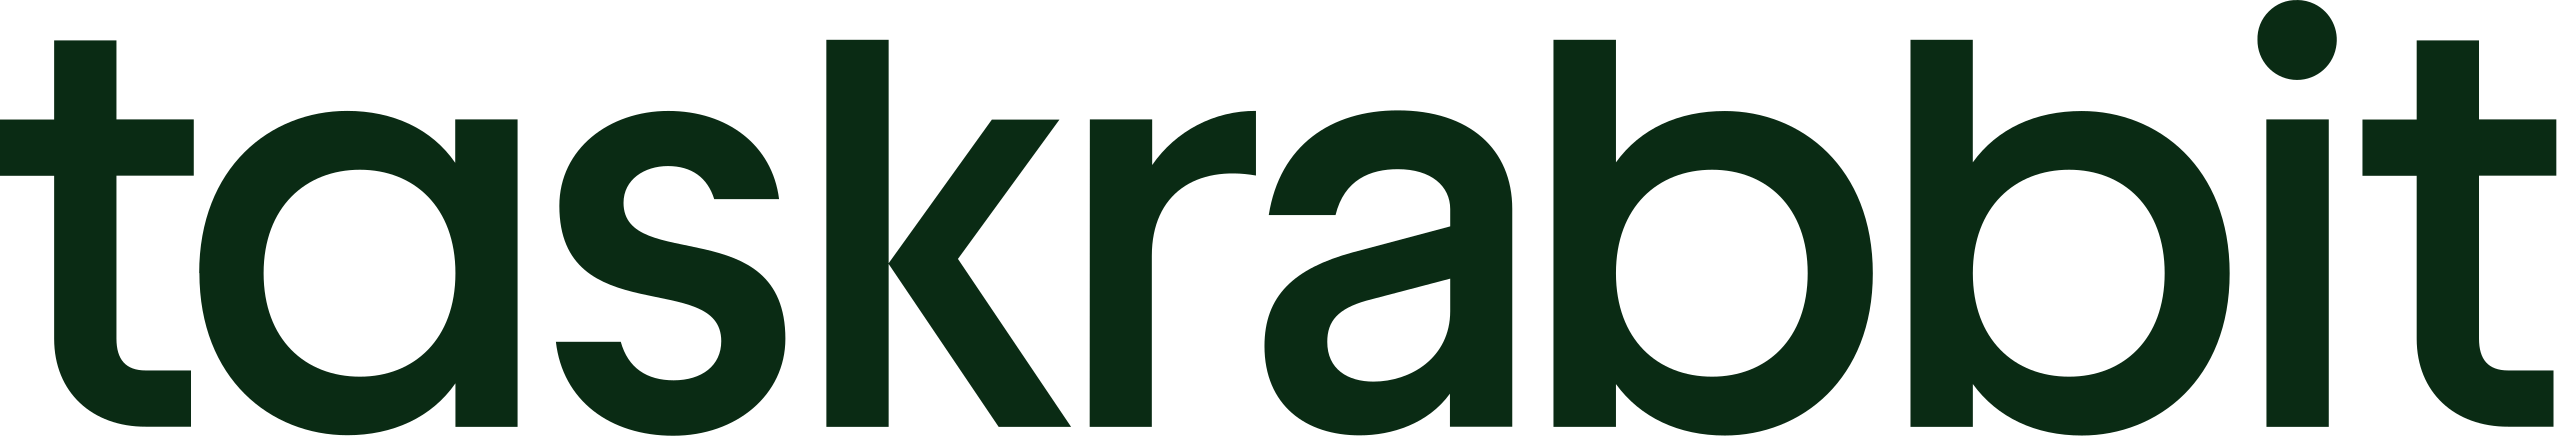 Taskrabbit-logo-2022.svg